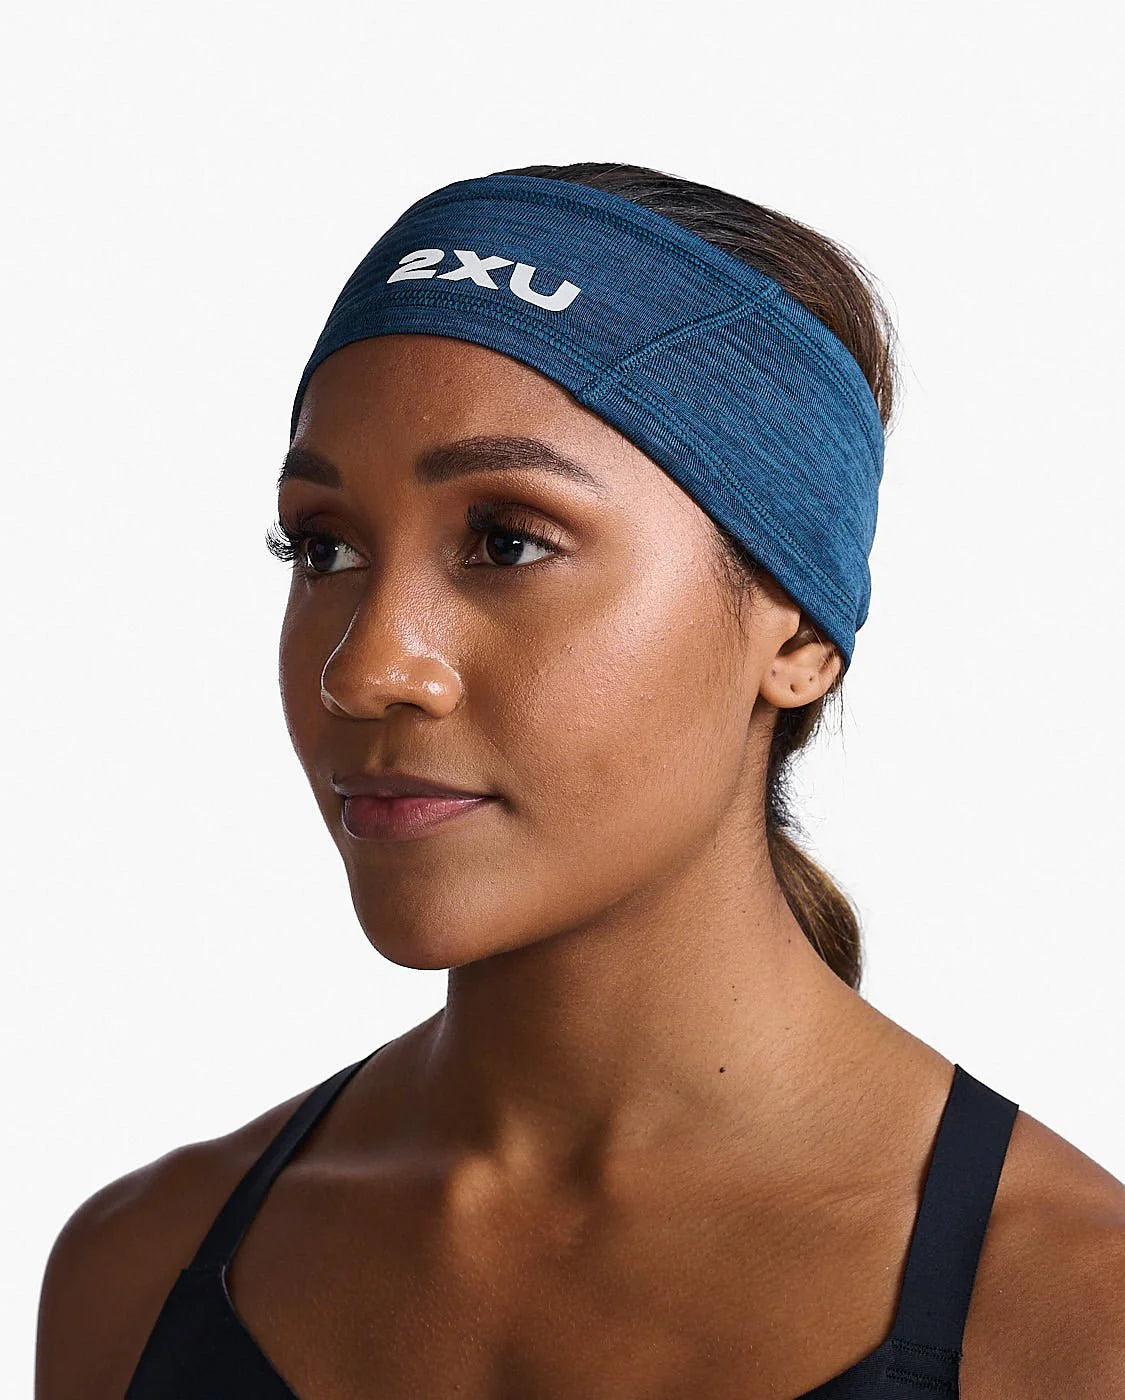 2XU Ignition Headband, Stirnband, unisex, dunkelblau/Mondlicht/reflektierend